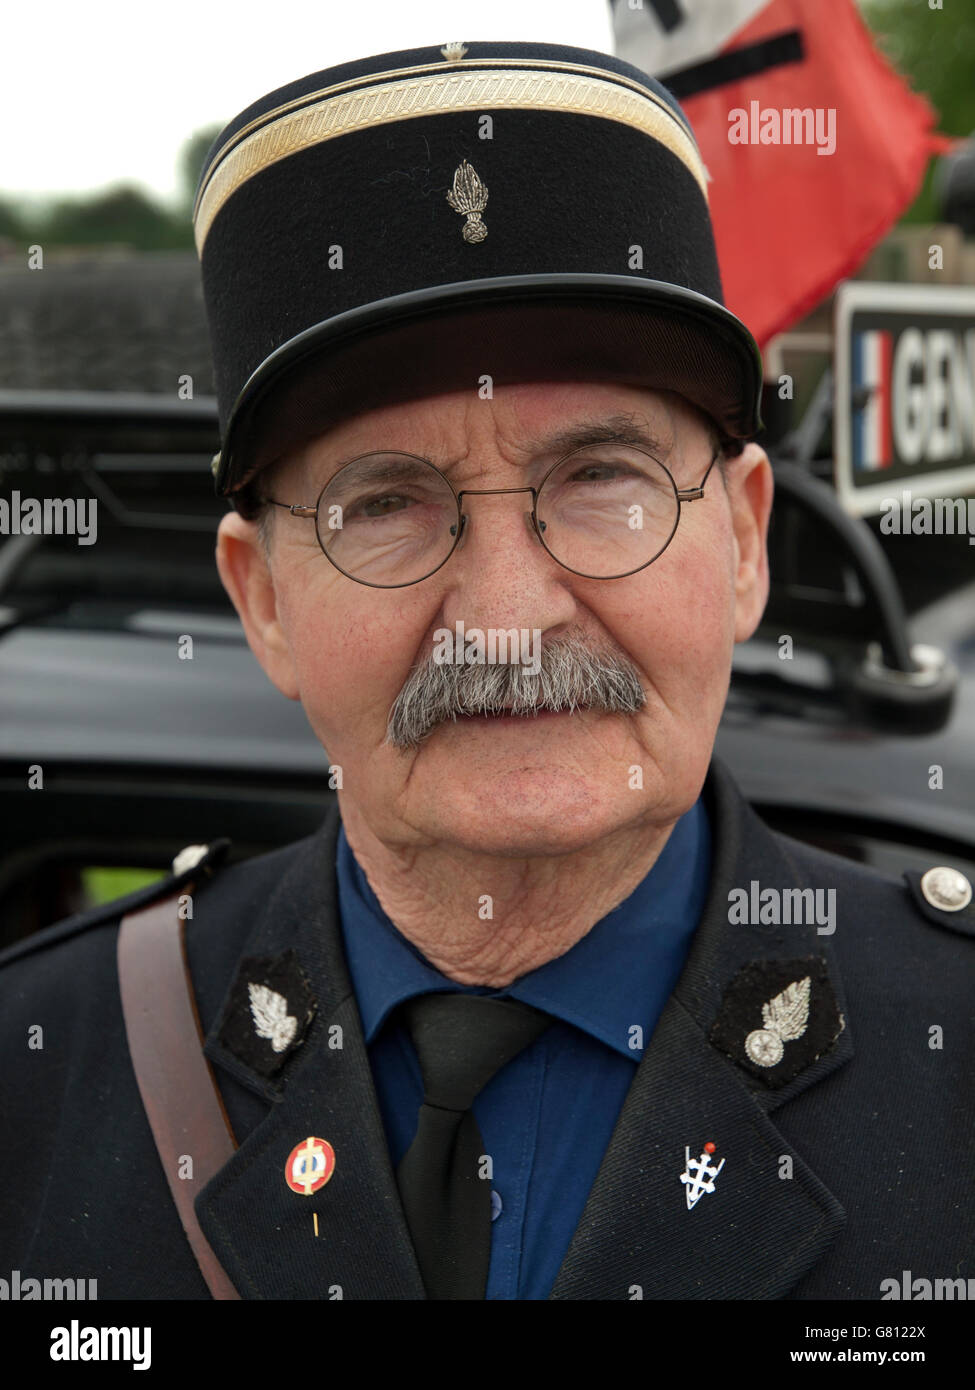 Uniforme militar disfraz grupo retrato policía gendarme cinturón